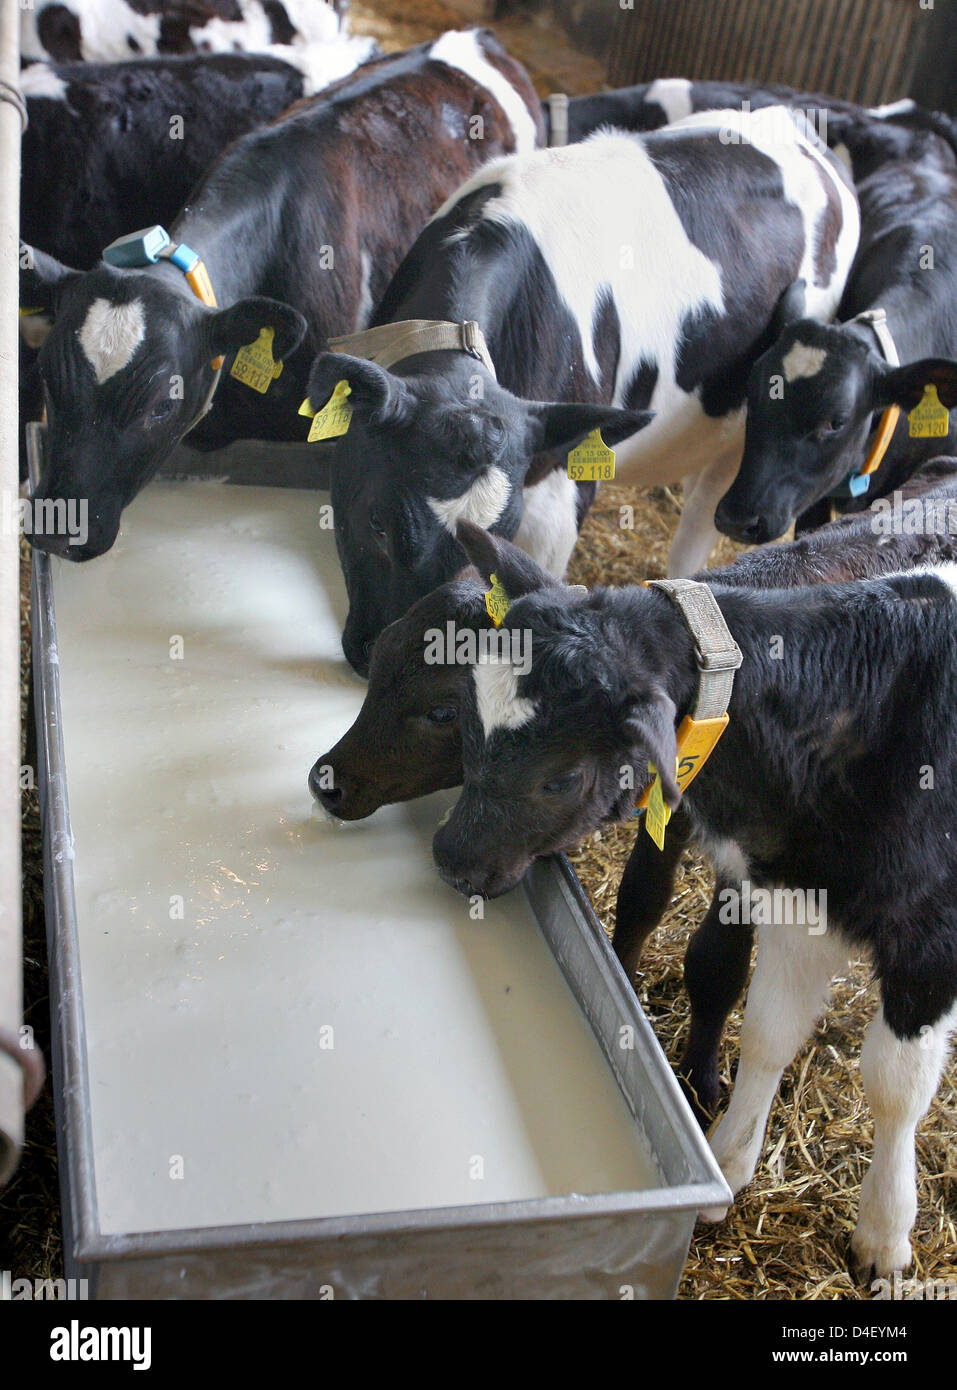 Ein Milch-Bauer füttert seine Milch Tagesproduktion auf seine Waden in Retschow, Deutschland, 27. Mai 2008. Die meisten deutschen Milchbauern wegschütten der Tagesproduktion von Milch auf die niedrigen Milchpreise protestiert und verlangt einen höheren Anteil des Preises. Foto: BERND WUESTNECK Stockfoto